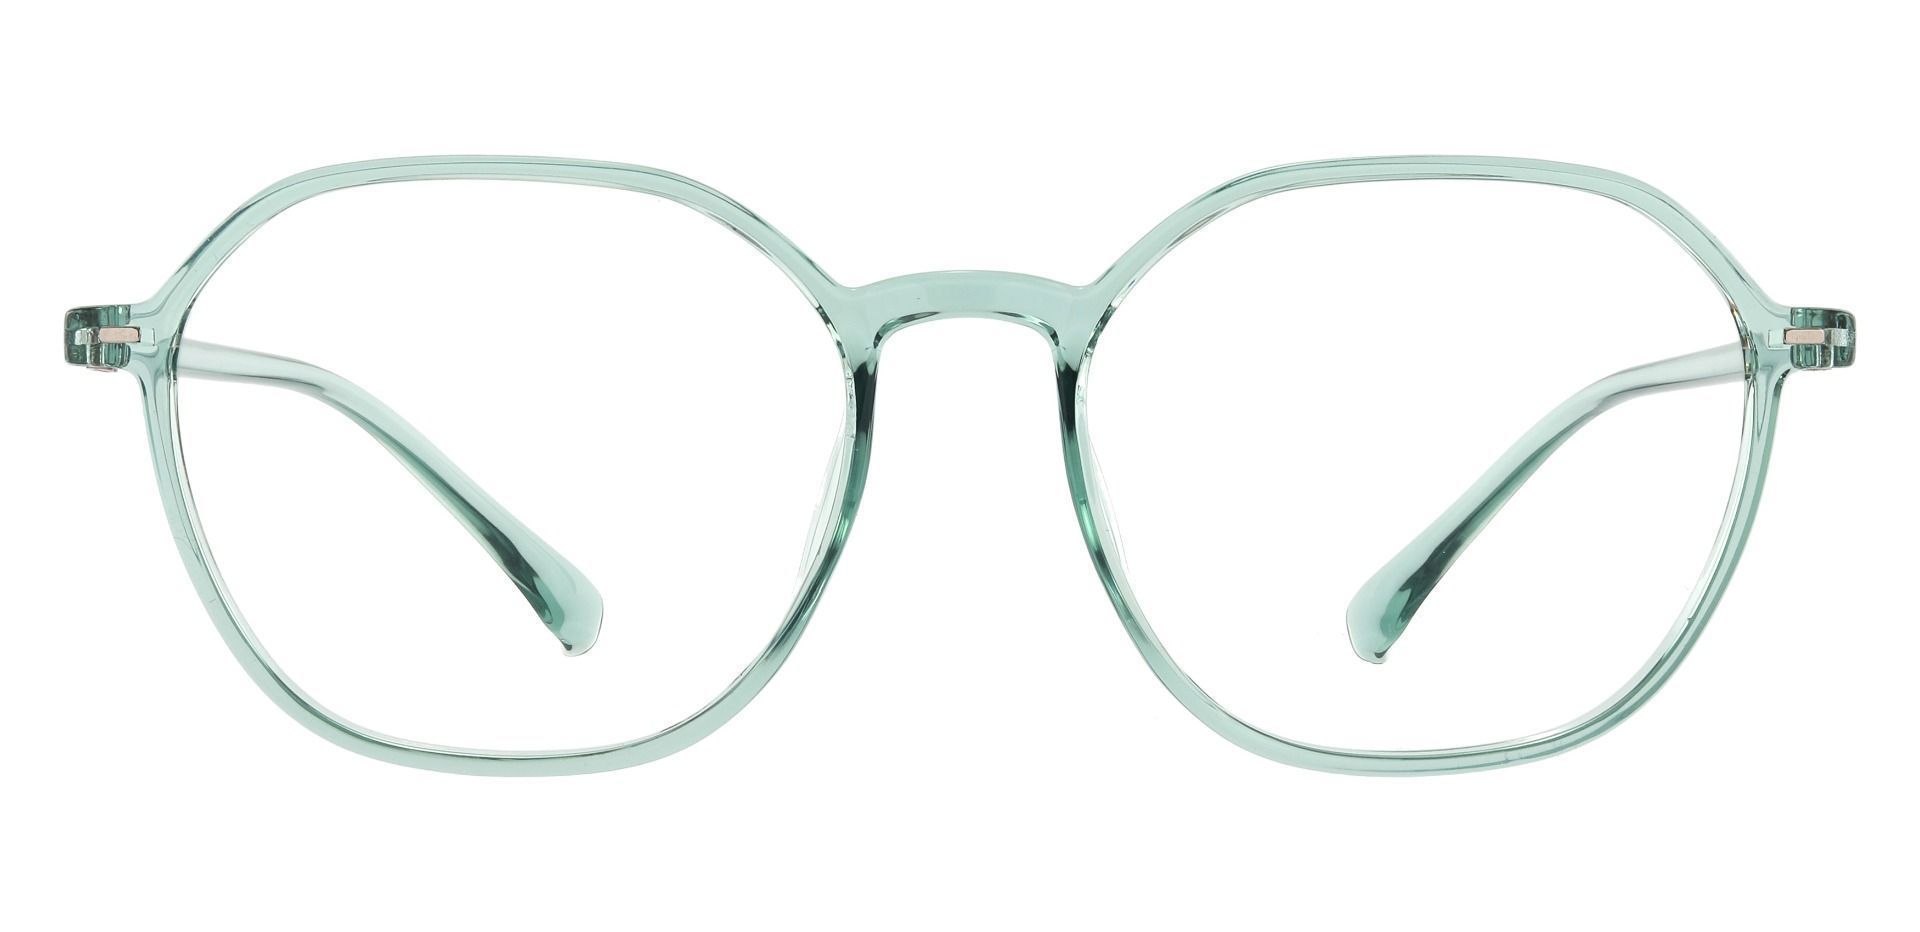 Detroit Geometric Progressive Glasses - Green